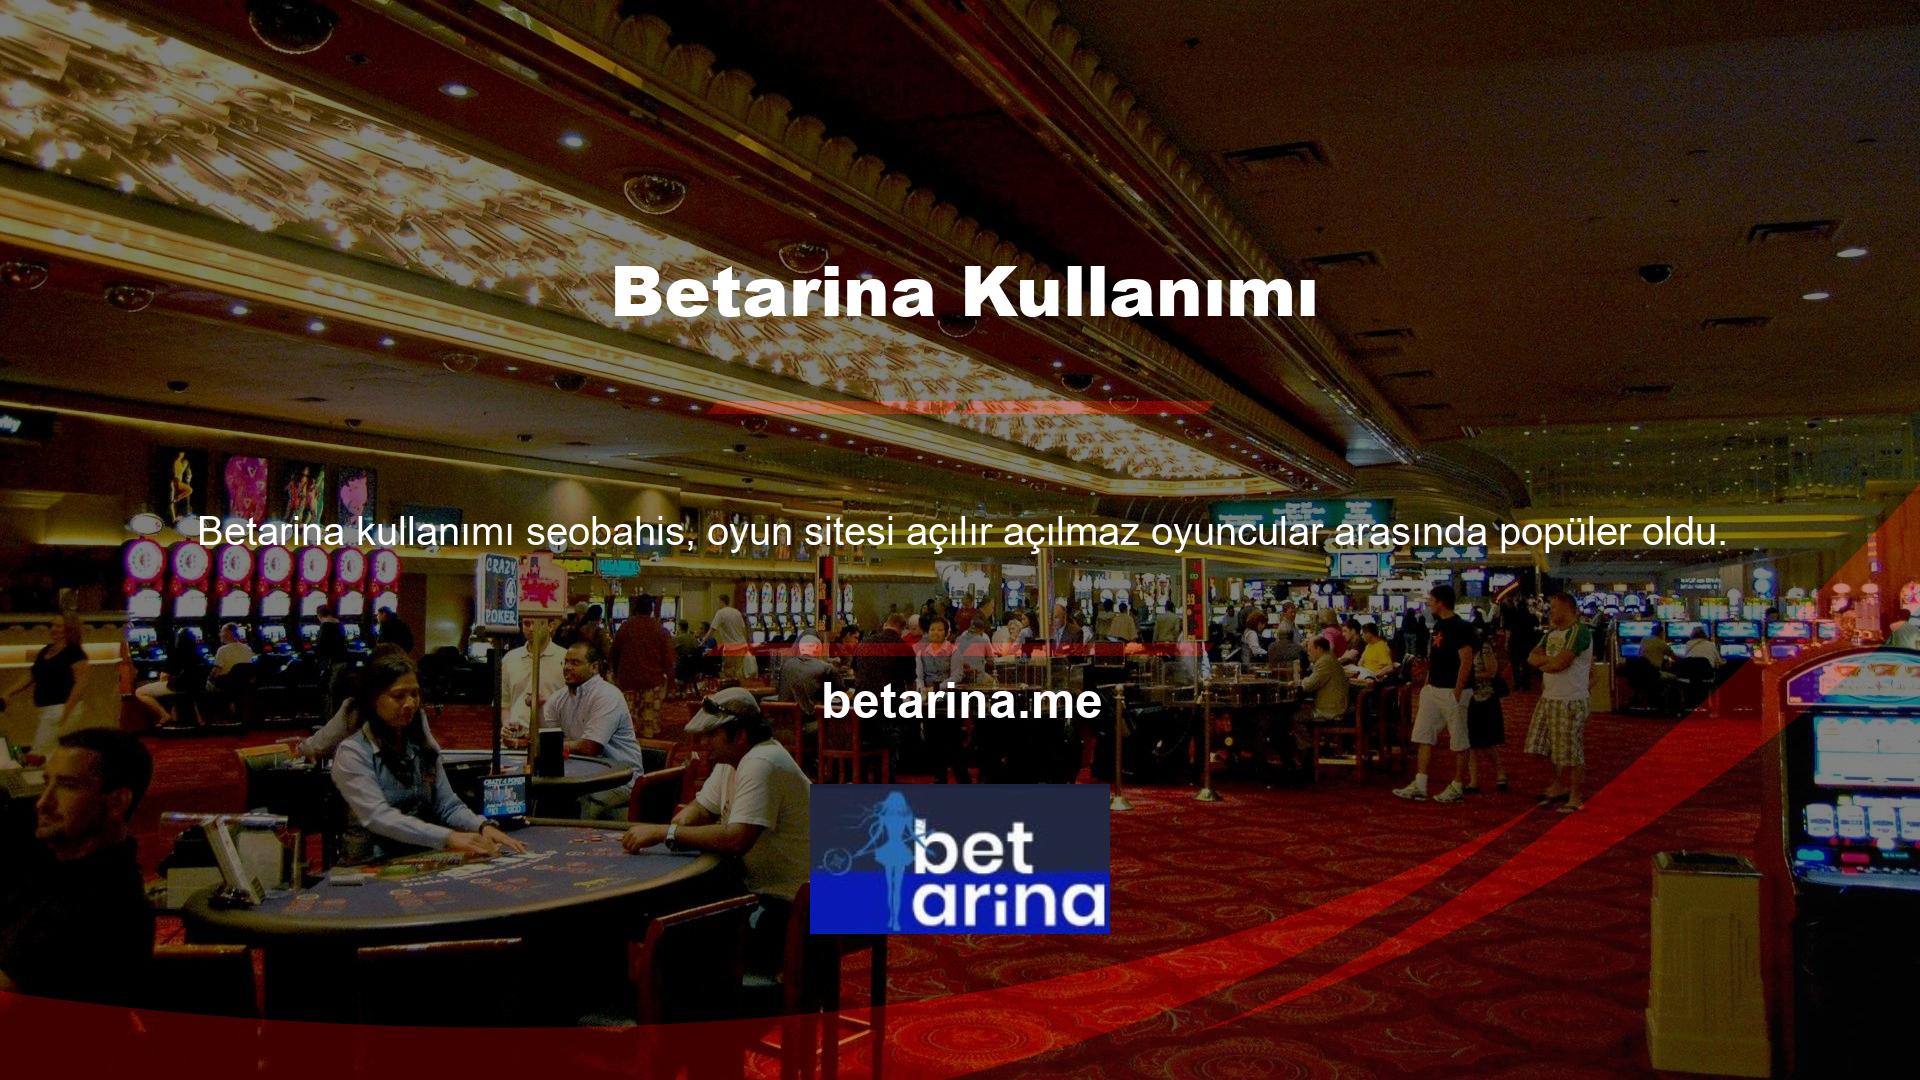 Casino sitelerinde yorum yapmak için platforma bakıldığında Betarina casino sitelerinde çok fazla olumsuz yorum olmadığı ve üyelerin memnun olduğu görülmektedir